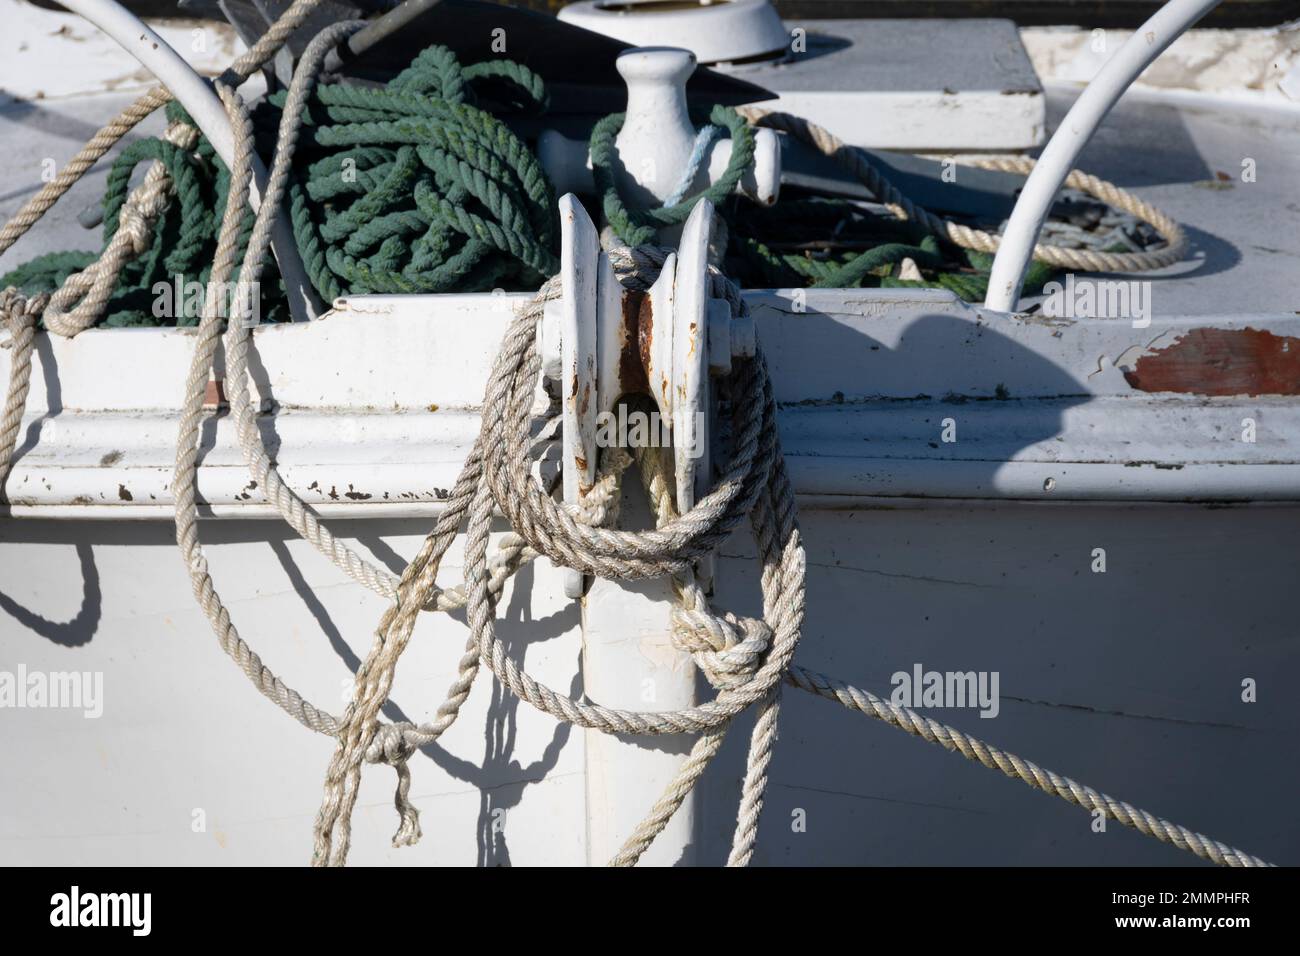 Mooring ropes on bow of boat, Motuoapu, Lake Taupo, North Island, New Zealand Stock Photo